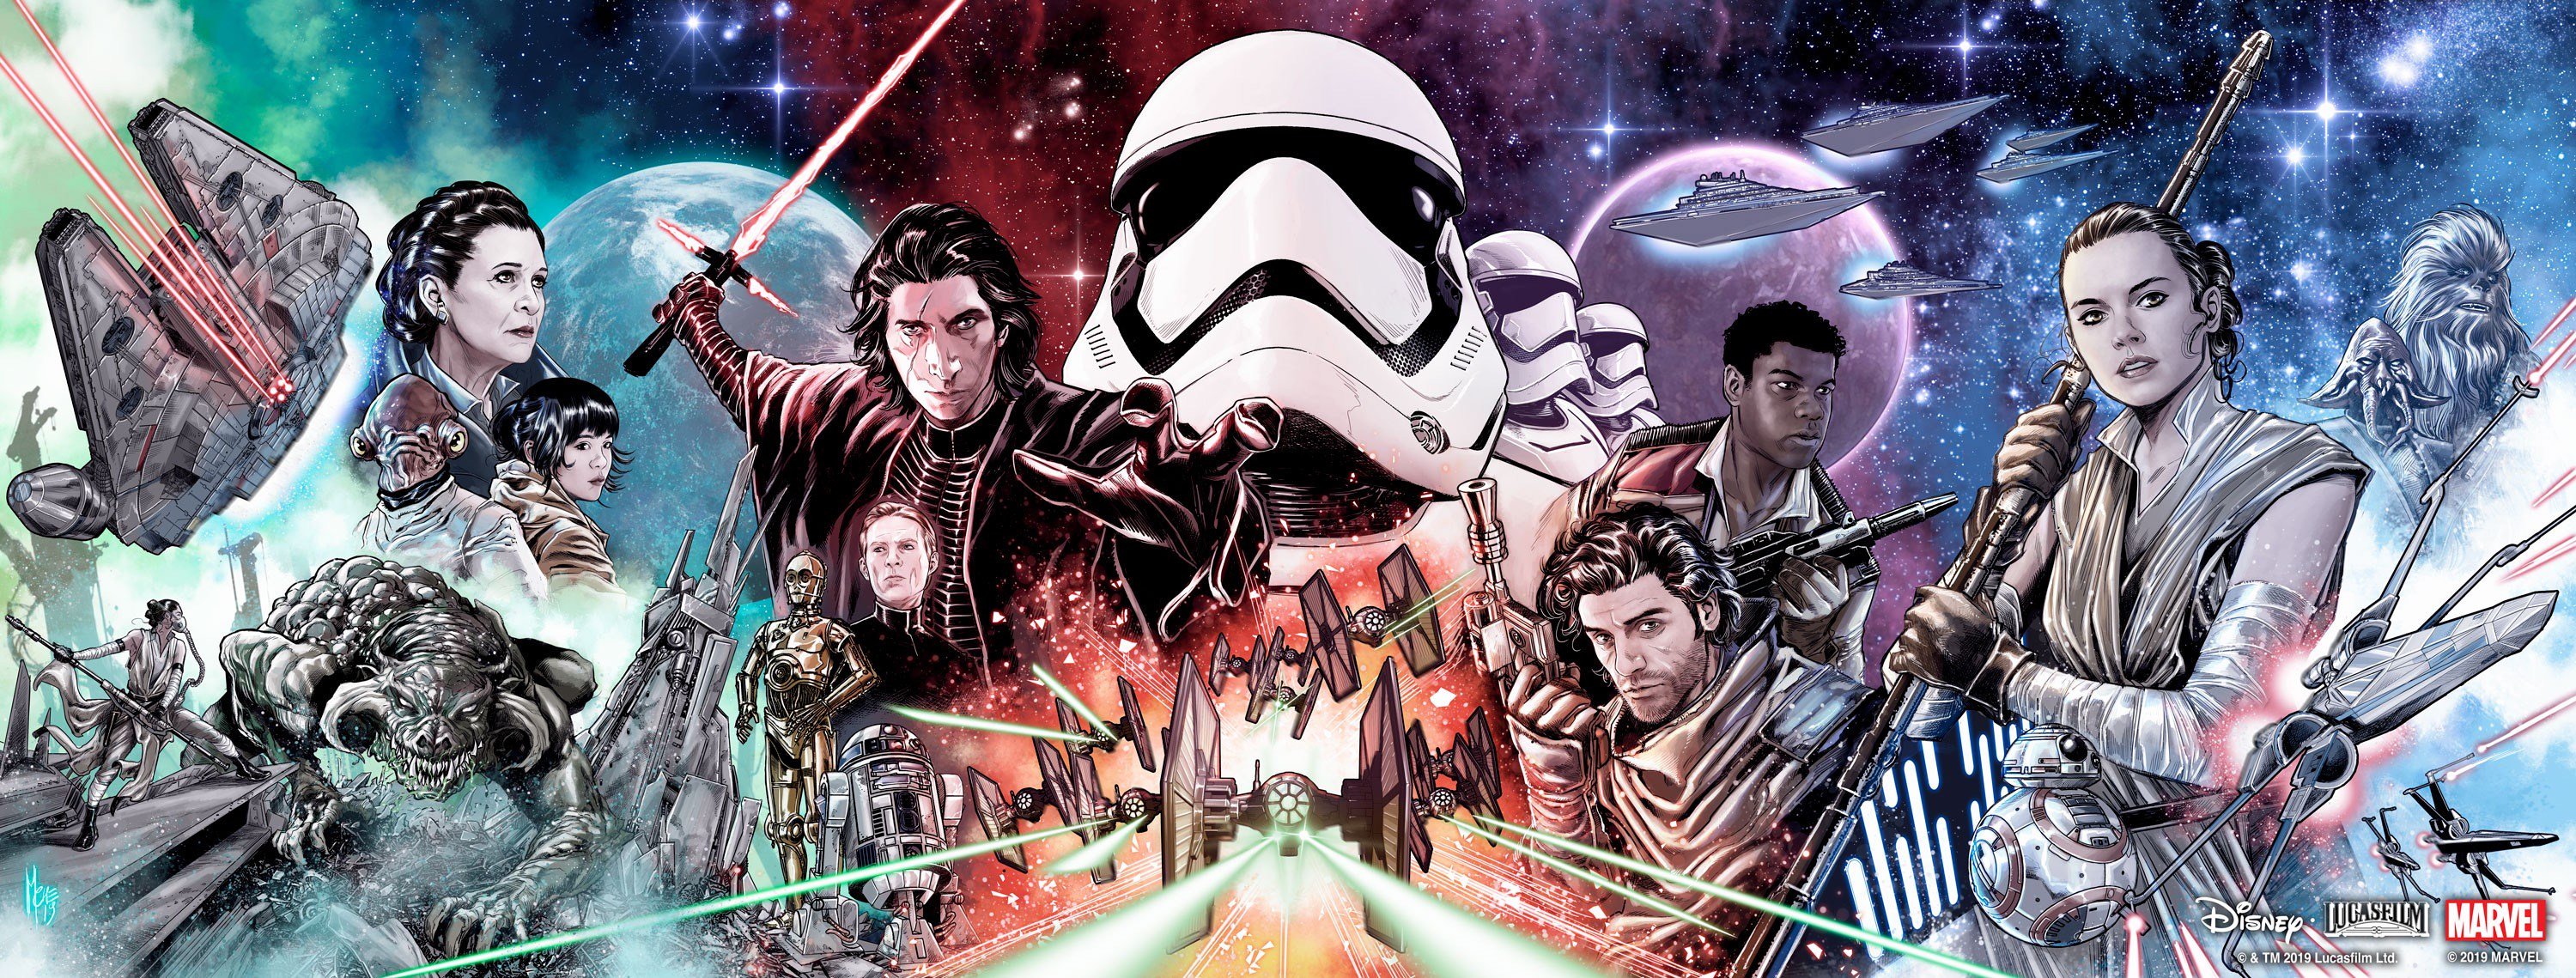 Lucasfilm уже работает над новой частью «Звездных войн»